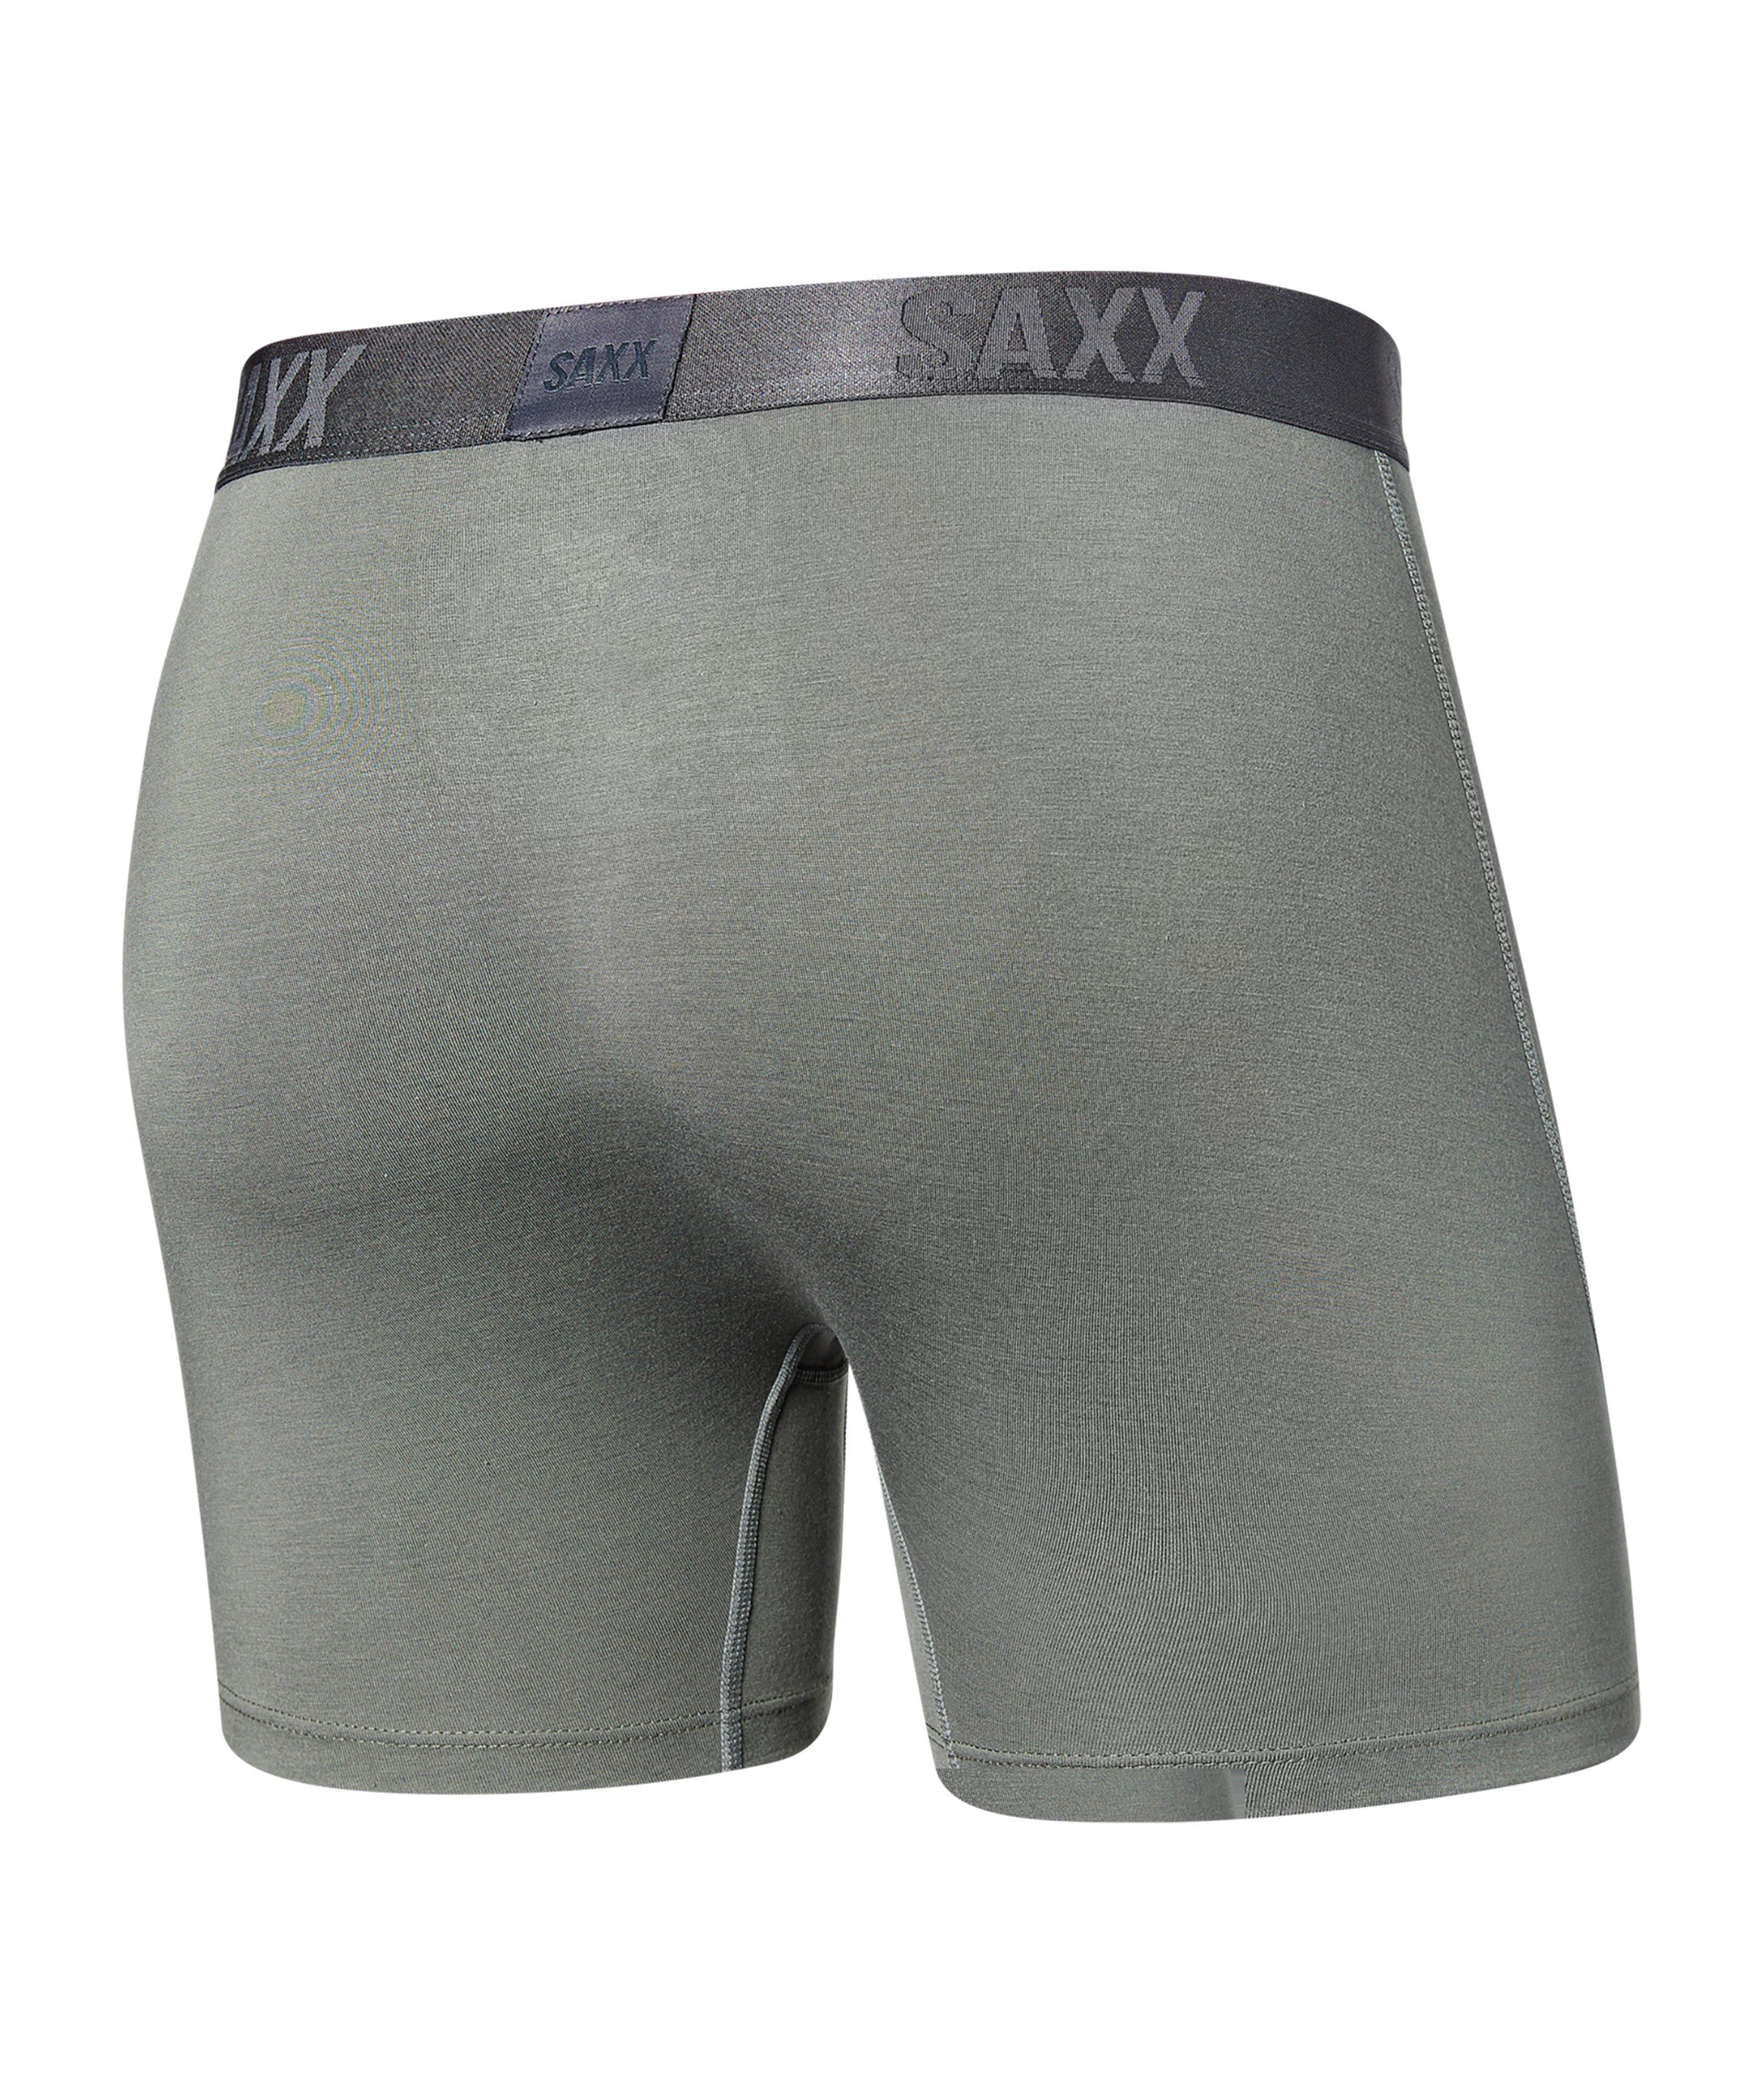 SAXX Premium Silk Boxer Brief, Underwear